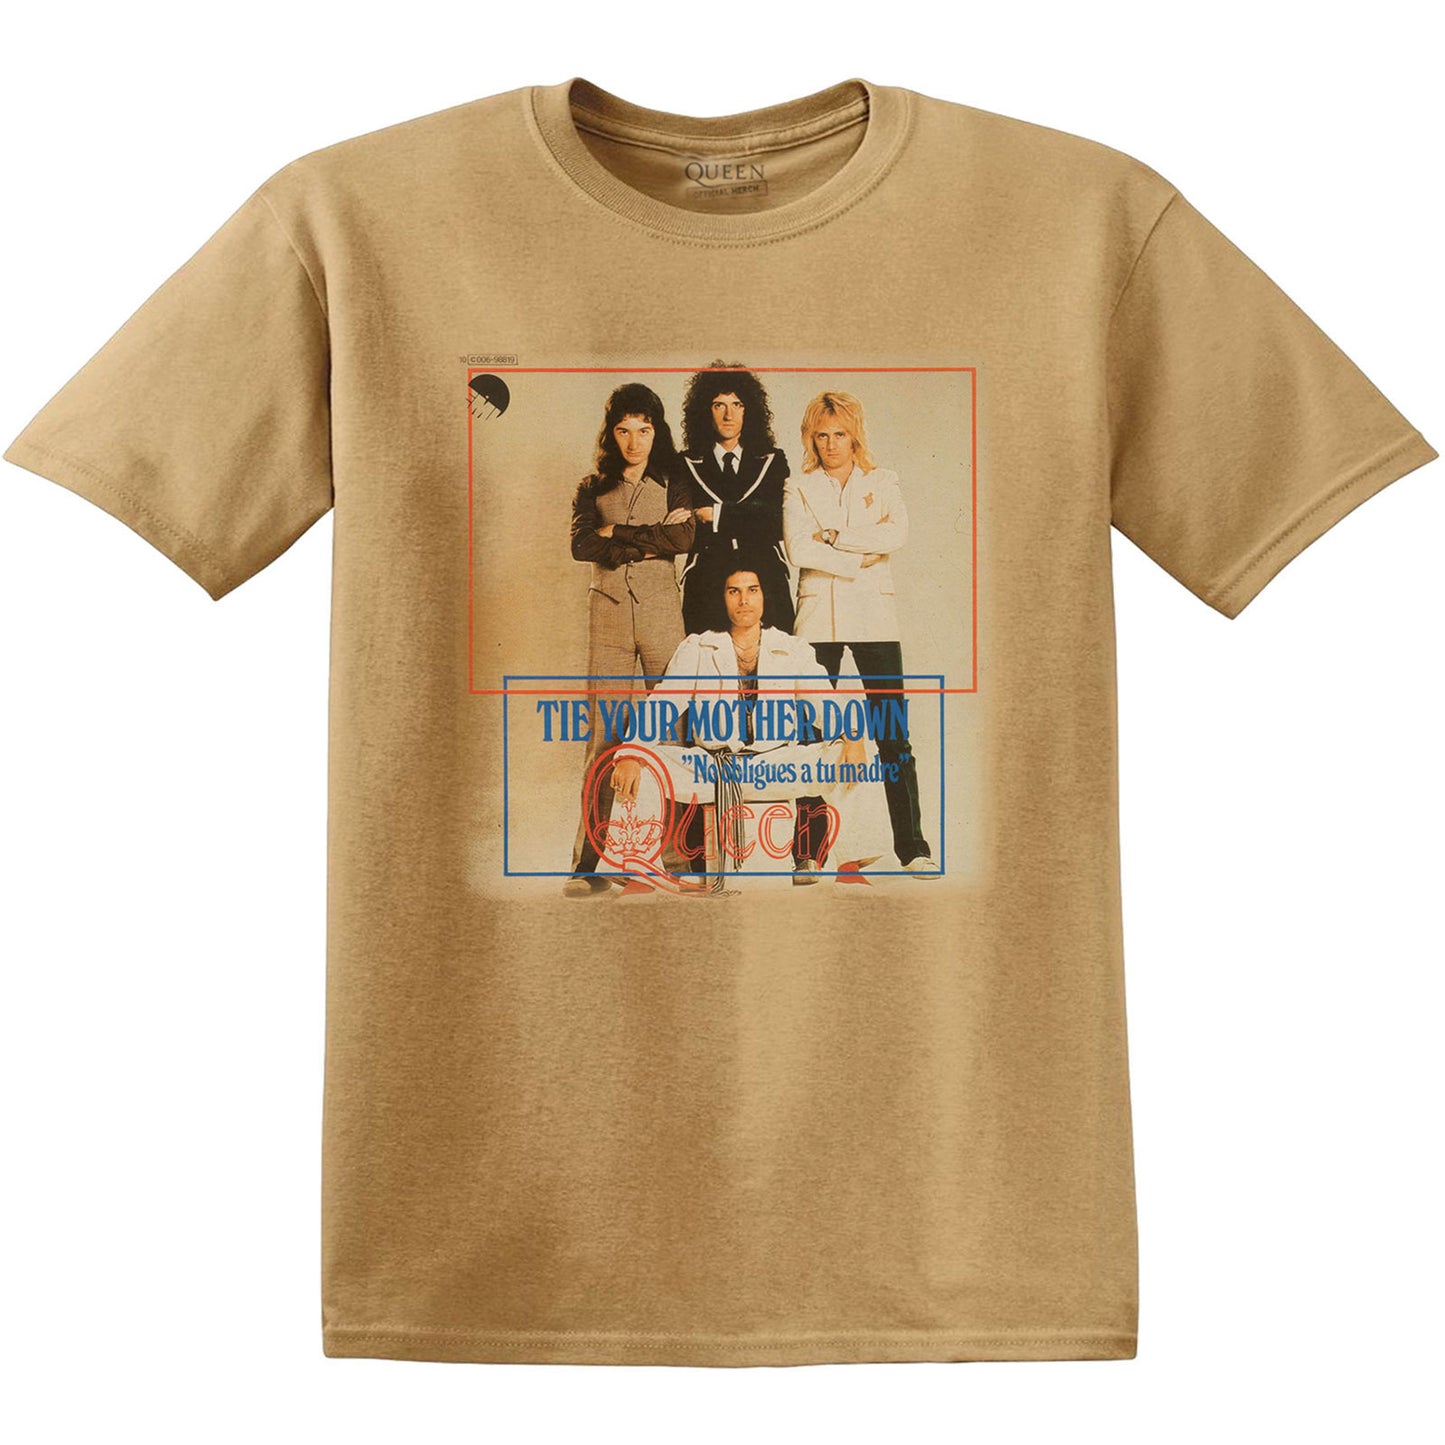 Queen Unisex T-Shirt: Tie Your Mother Down